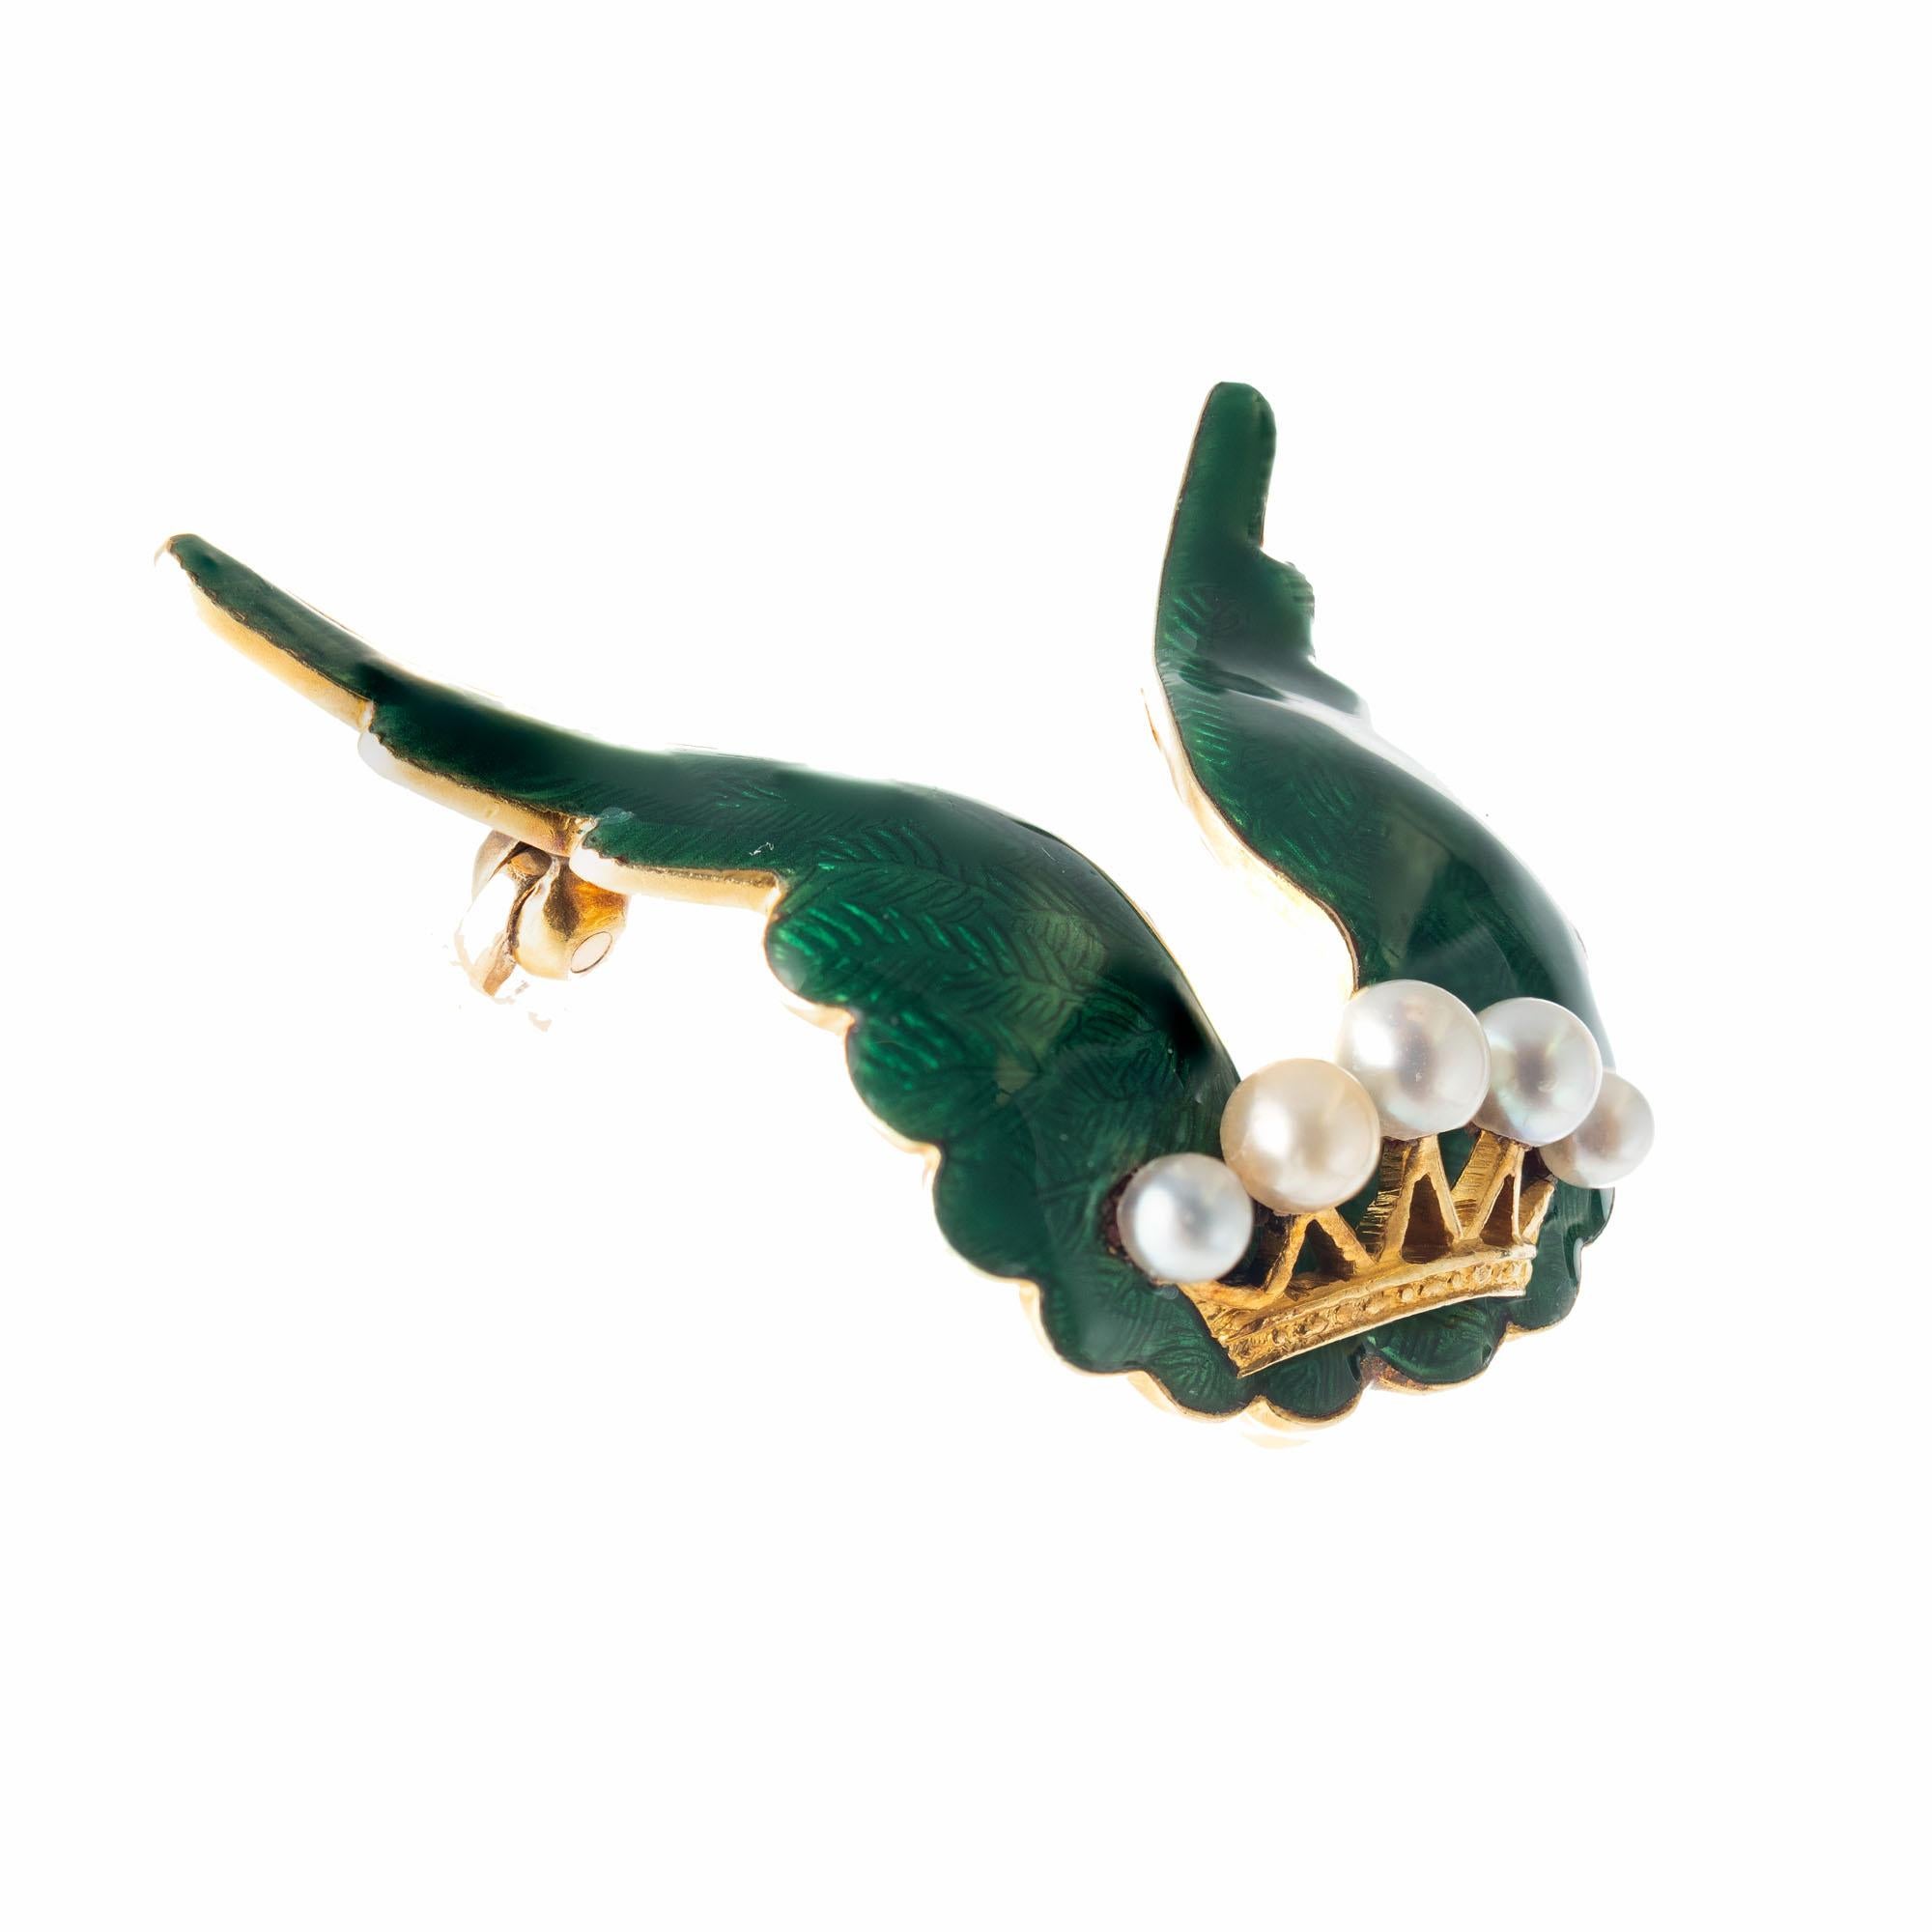 grüne Emaille-Flügelbrosche aus den 1890er Jahren mit natürlichen, abgestuften Perlen. Auf der Rückseite befindet sich ein Haken, an dem ein Anhänger oder eine kleine Uhr befestigt werden kann. Etwa  1890-1900

5 natürliche graue Perlen